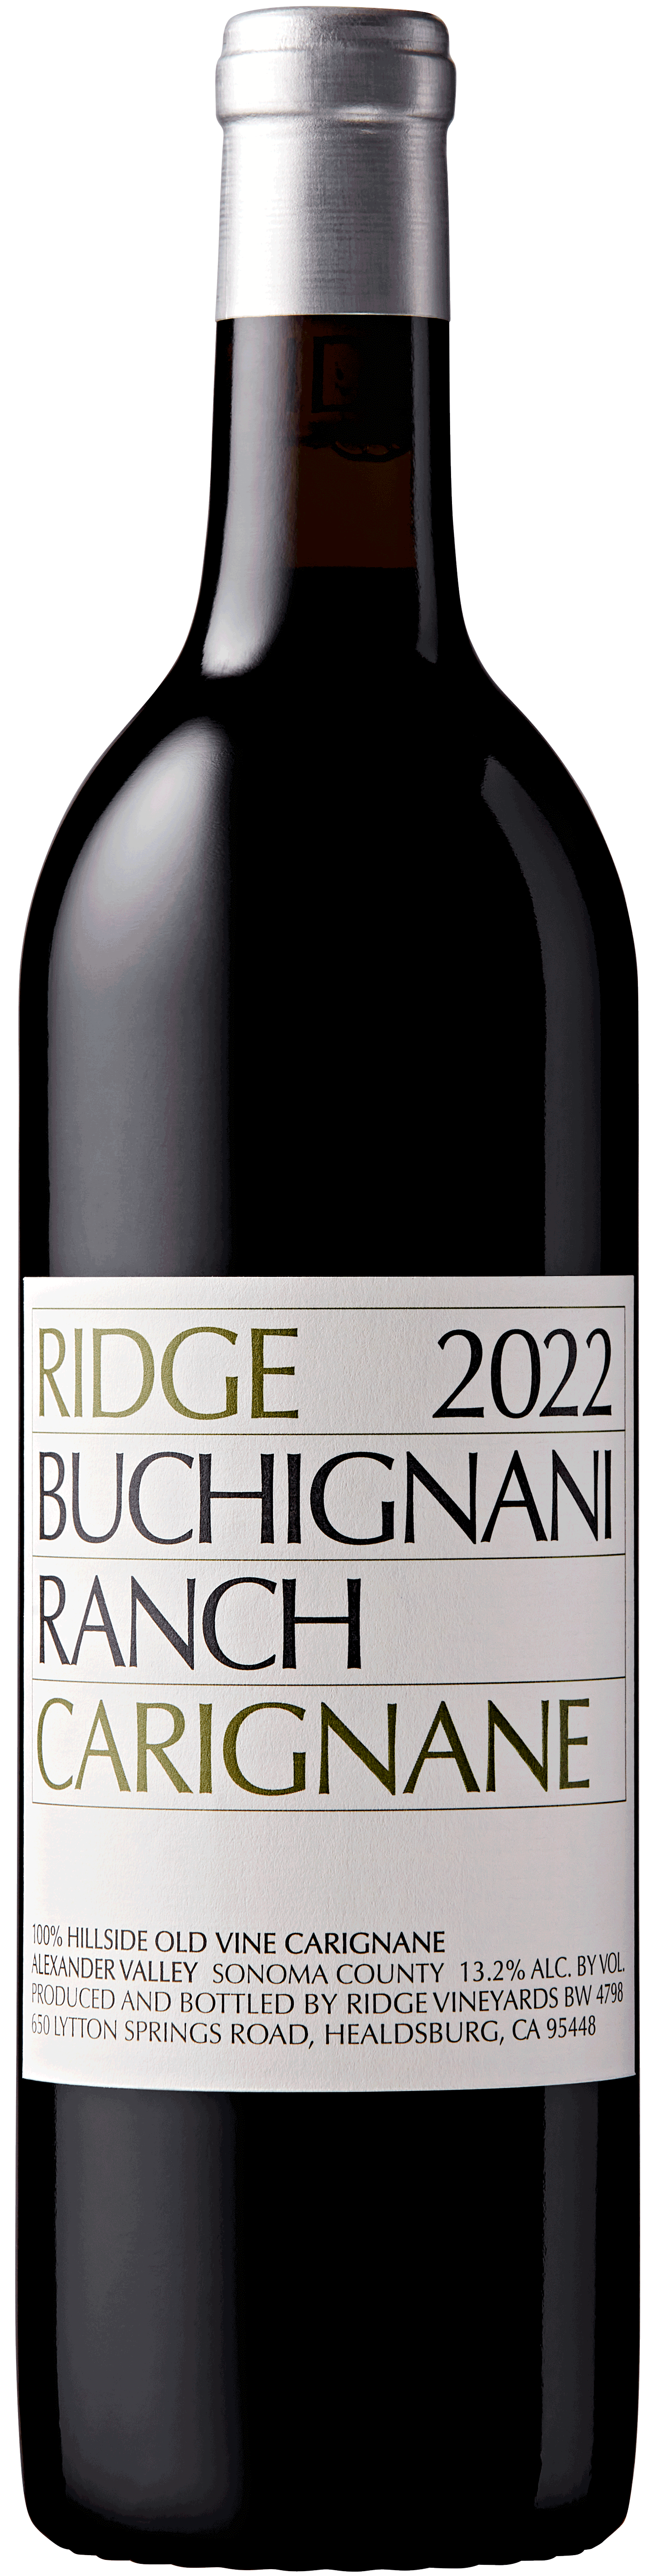 2022 Buchignani Carignane